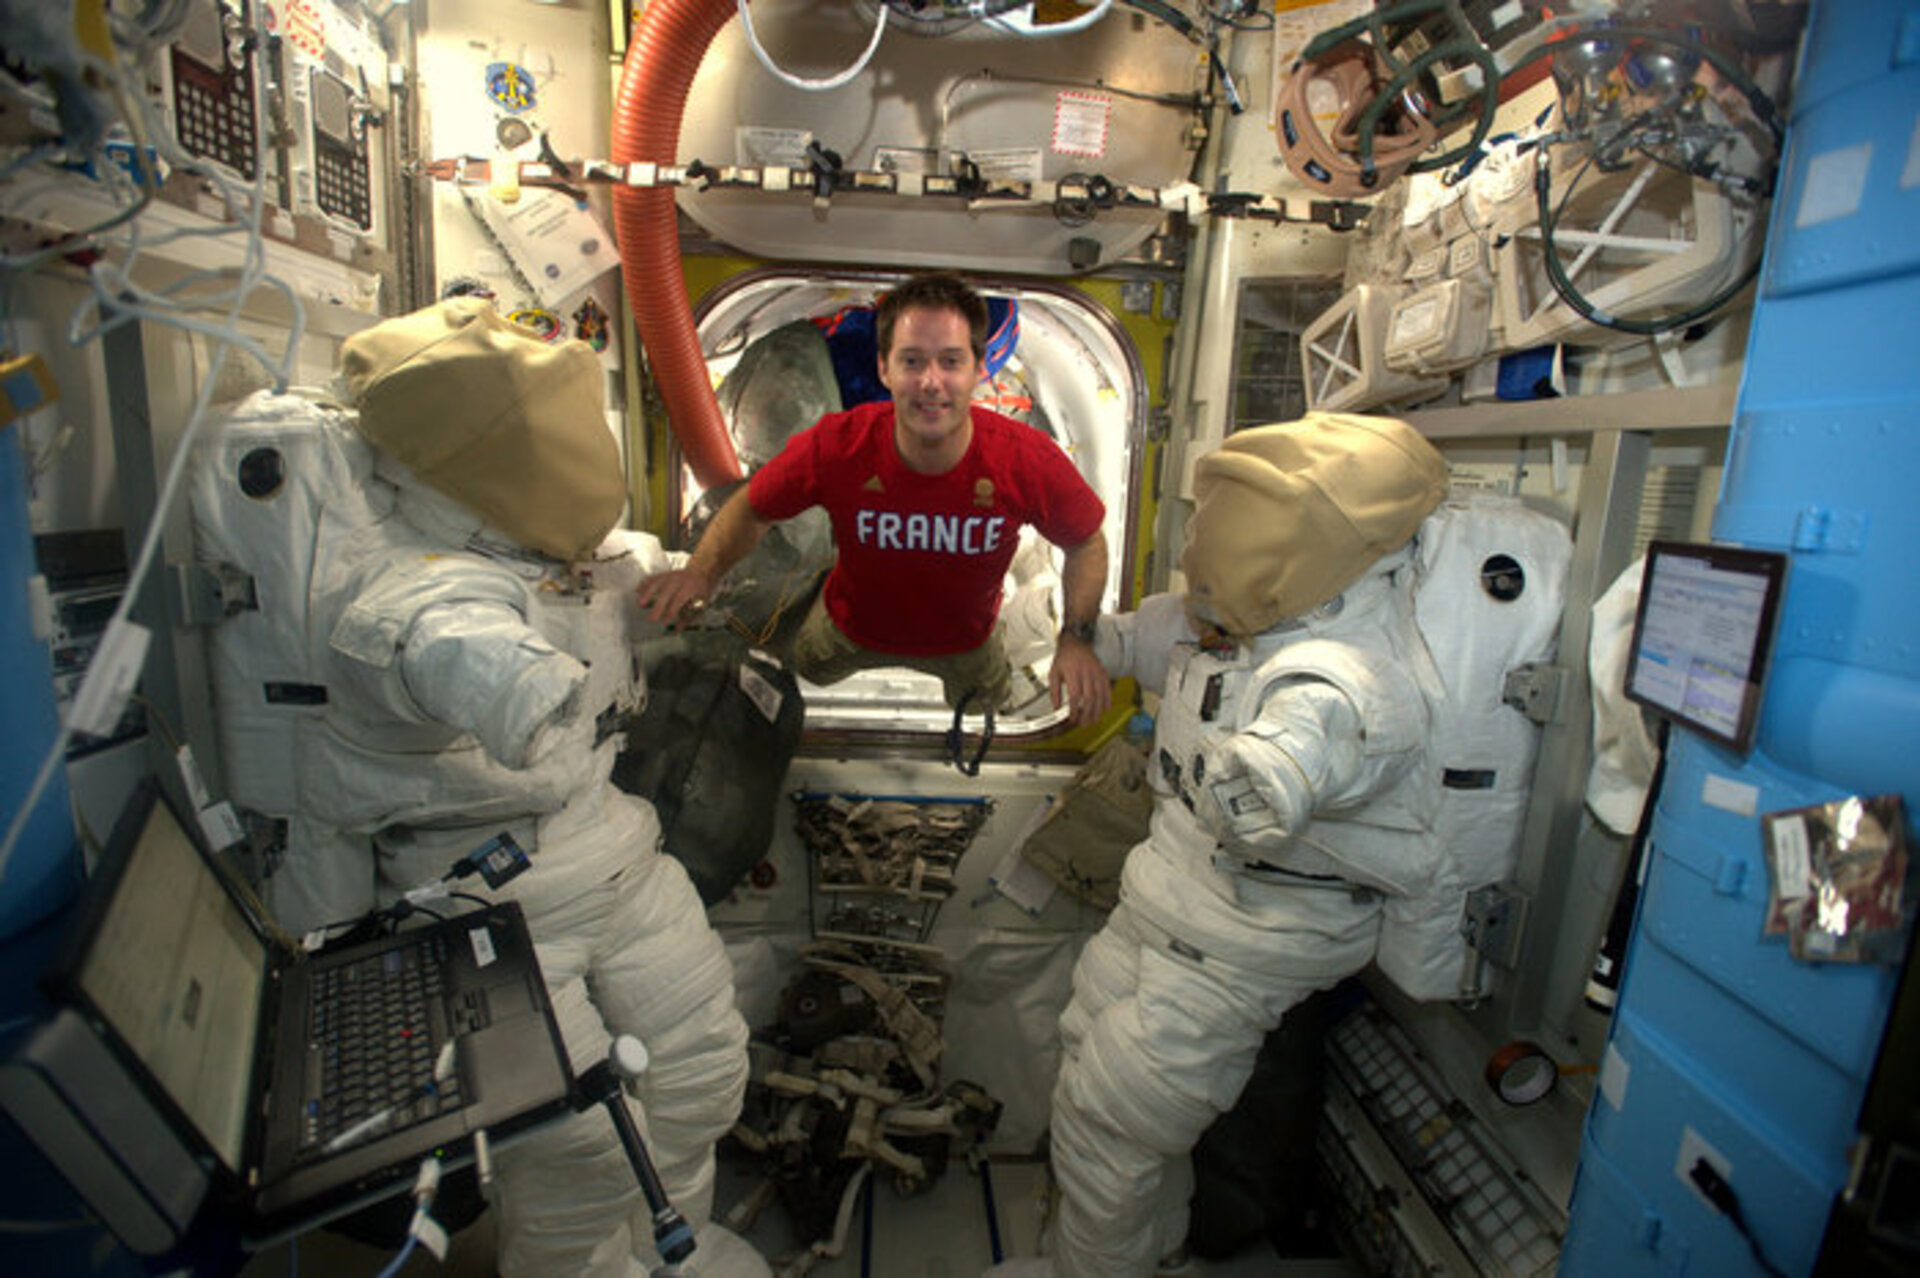 ESA astronaut Thomas Pesquet Rahvusvahelises kosmosejaamas skafandrite juures, mille tema ja komandör Shane Kimbrough reedel selga panevad. Foto: ESA/NASA